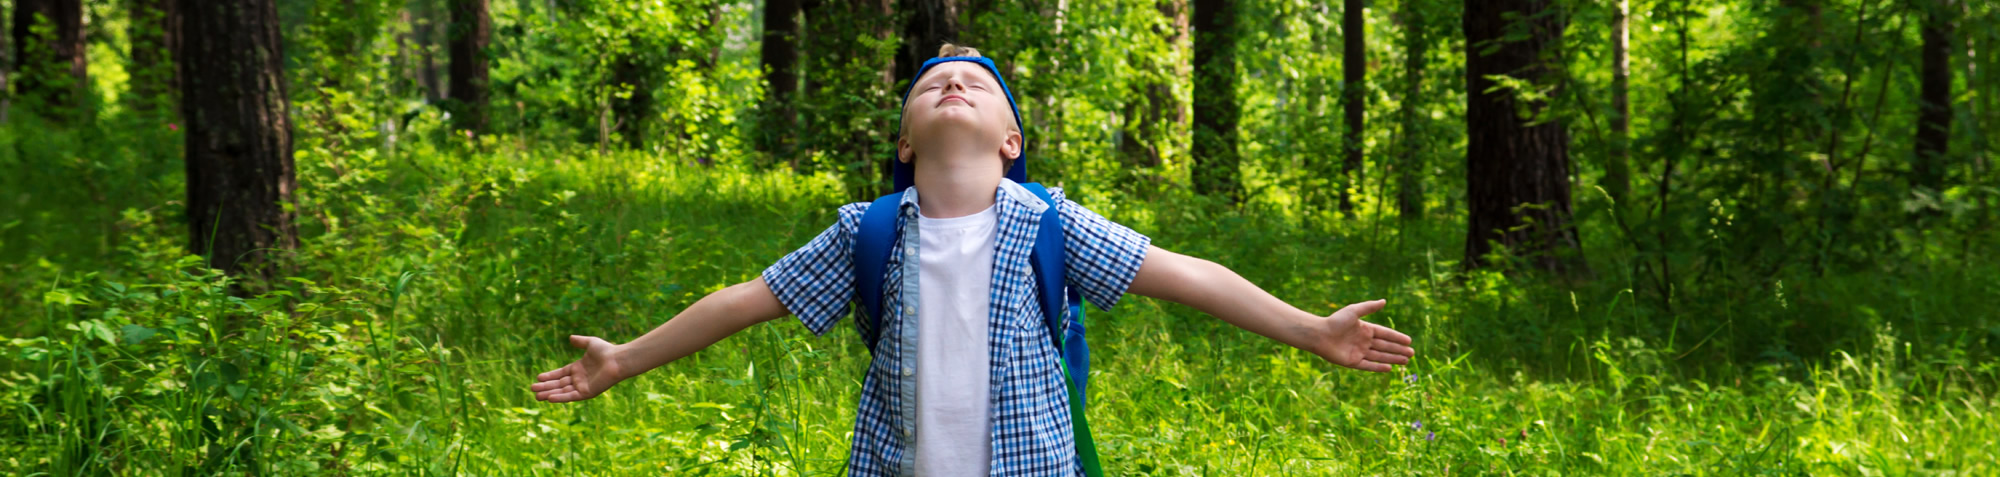 Glückliches Kind, das im grünen Wald spazieren geht und frische Luft atmet